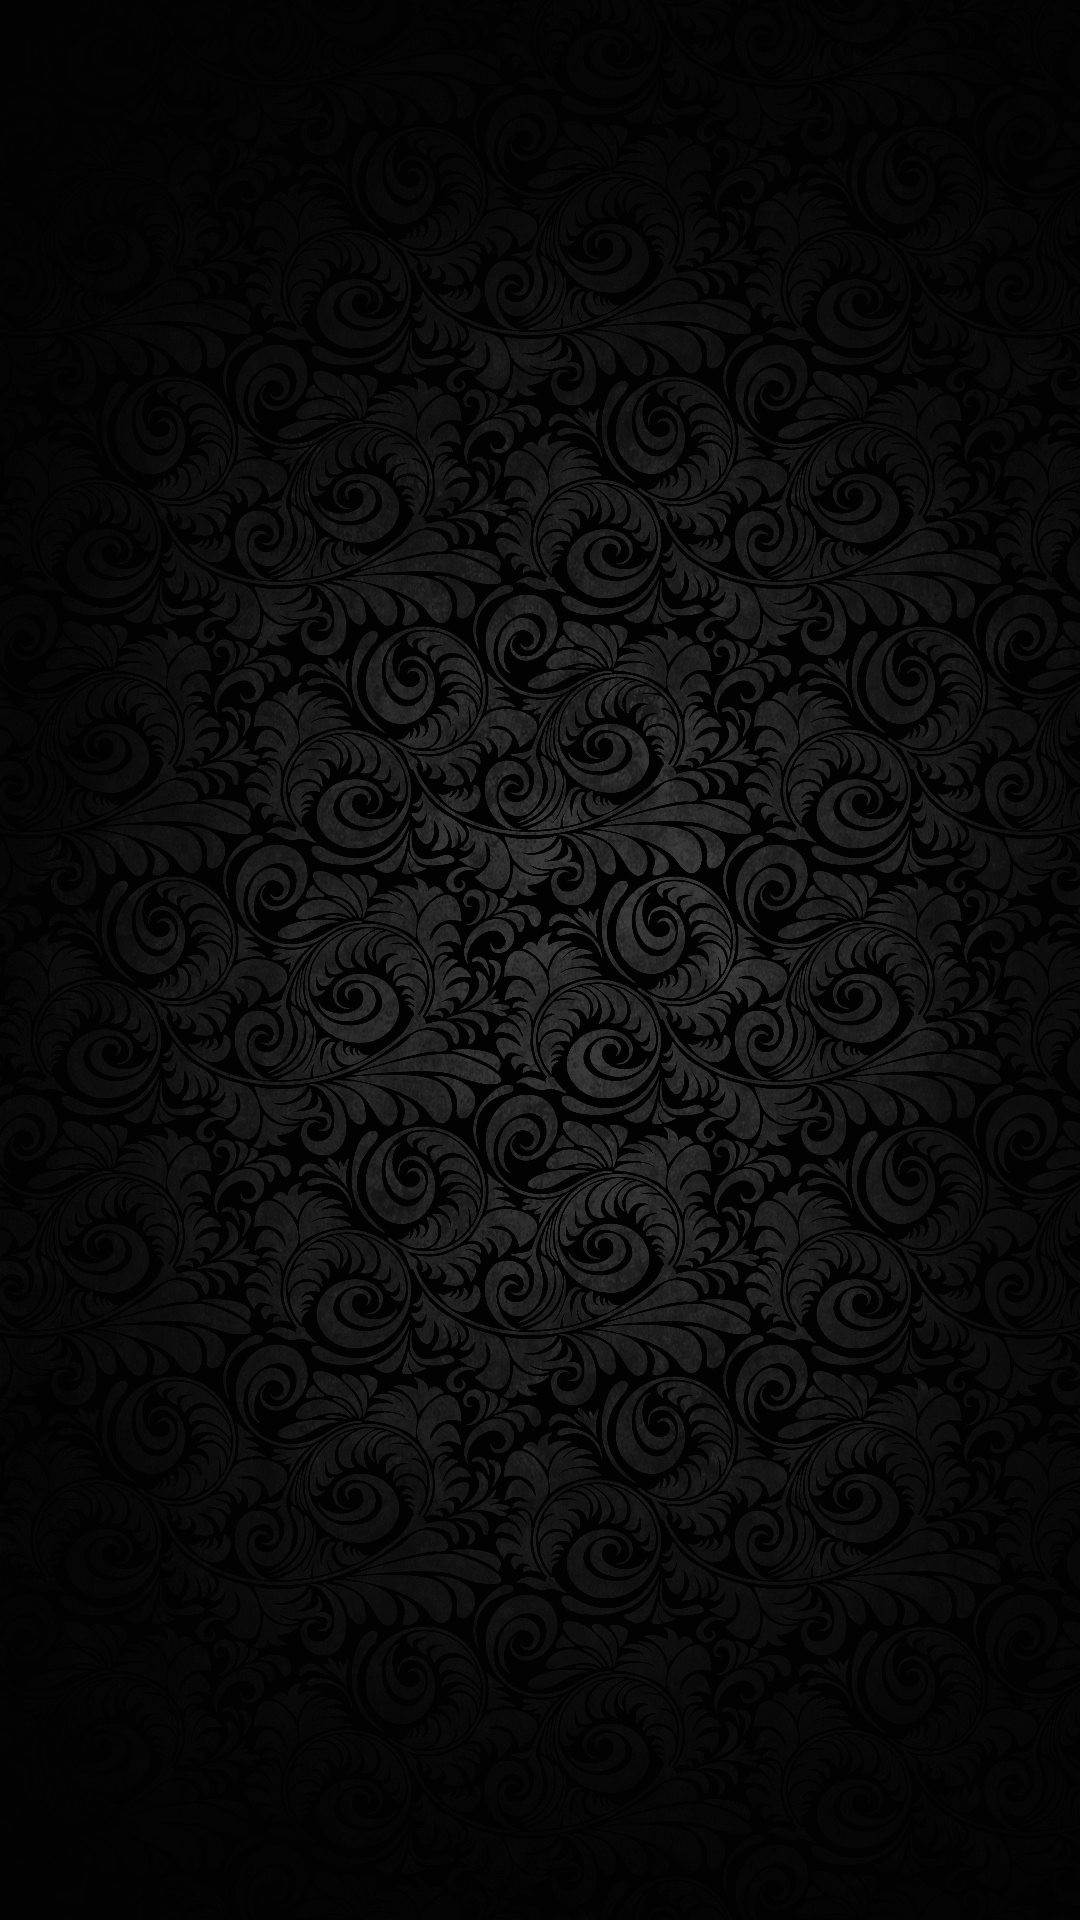 1080x1920 Wallpaper full hd 1080 x 1920 smartphone dark elegant